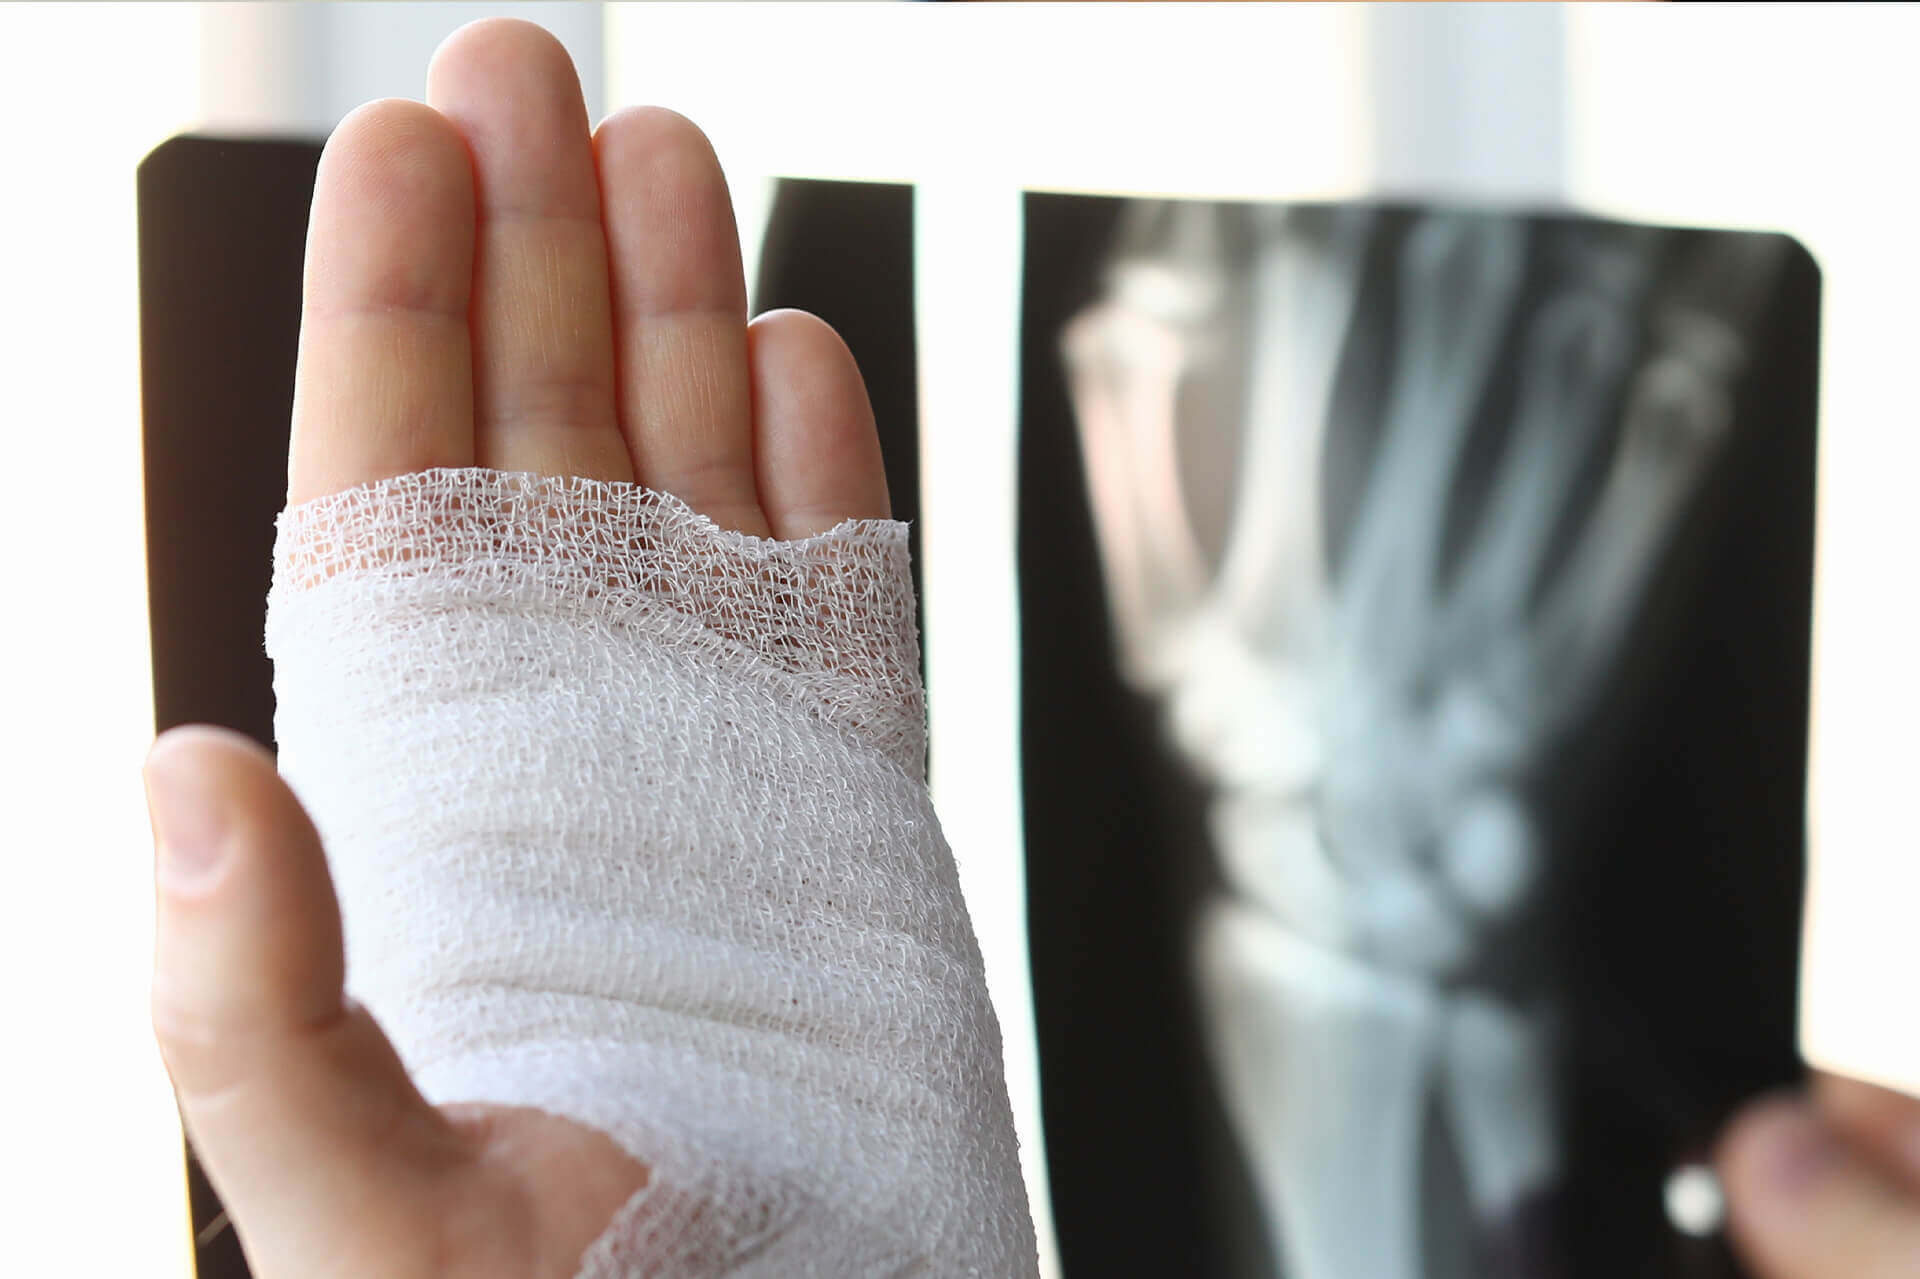 Auf diesem Bild sieht man eine verbundene Hand. Auf der rechten Seite sieht man ein Röntgenbild der rechten Hand. Der Hintergrund ist hierbei verschwommen.